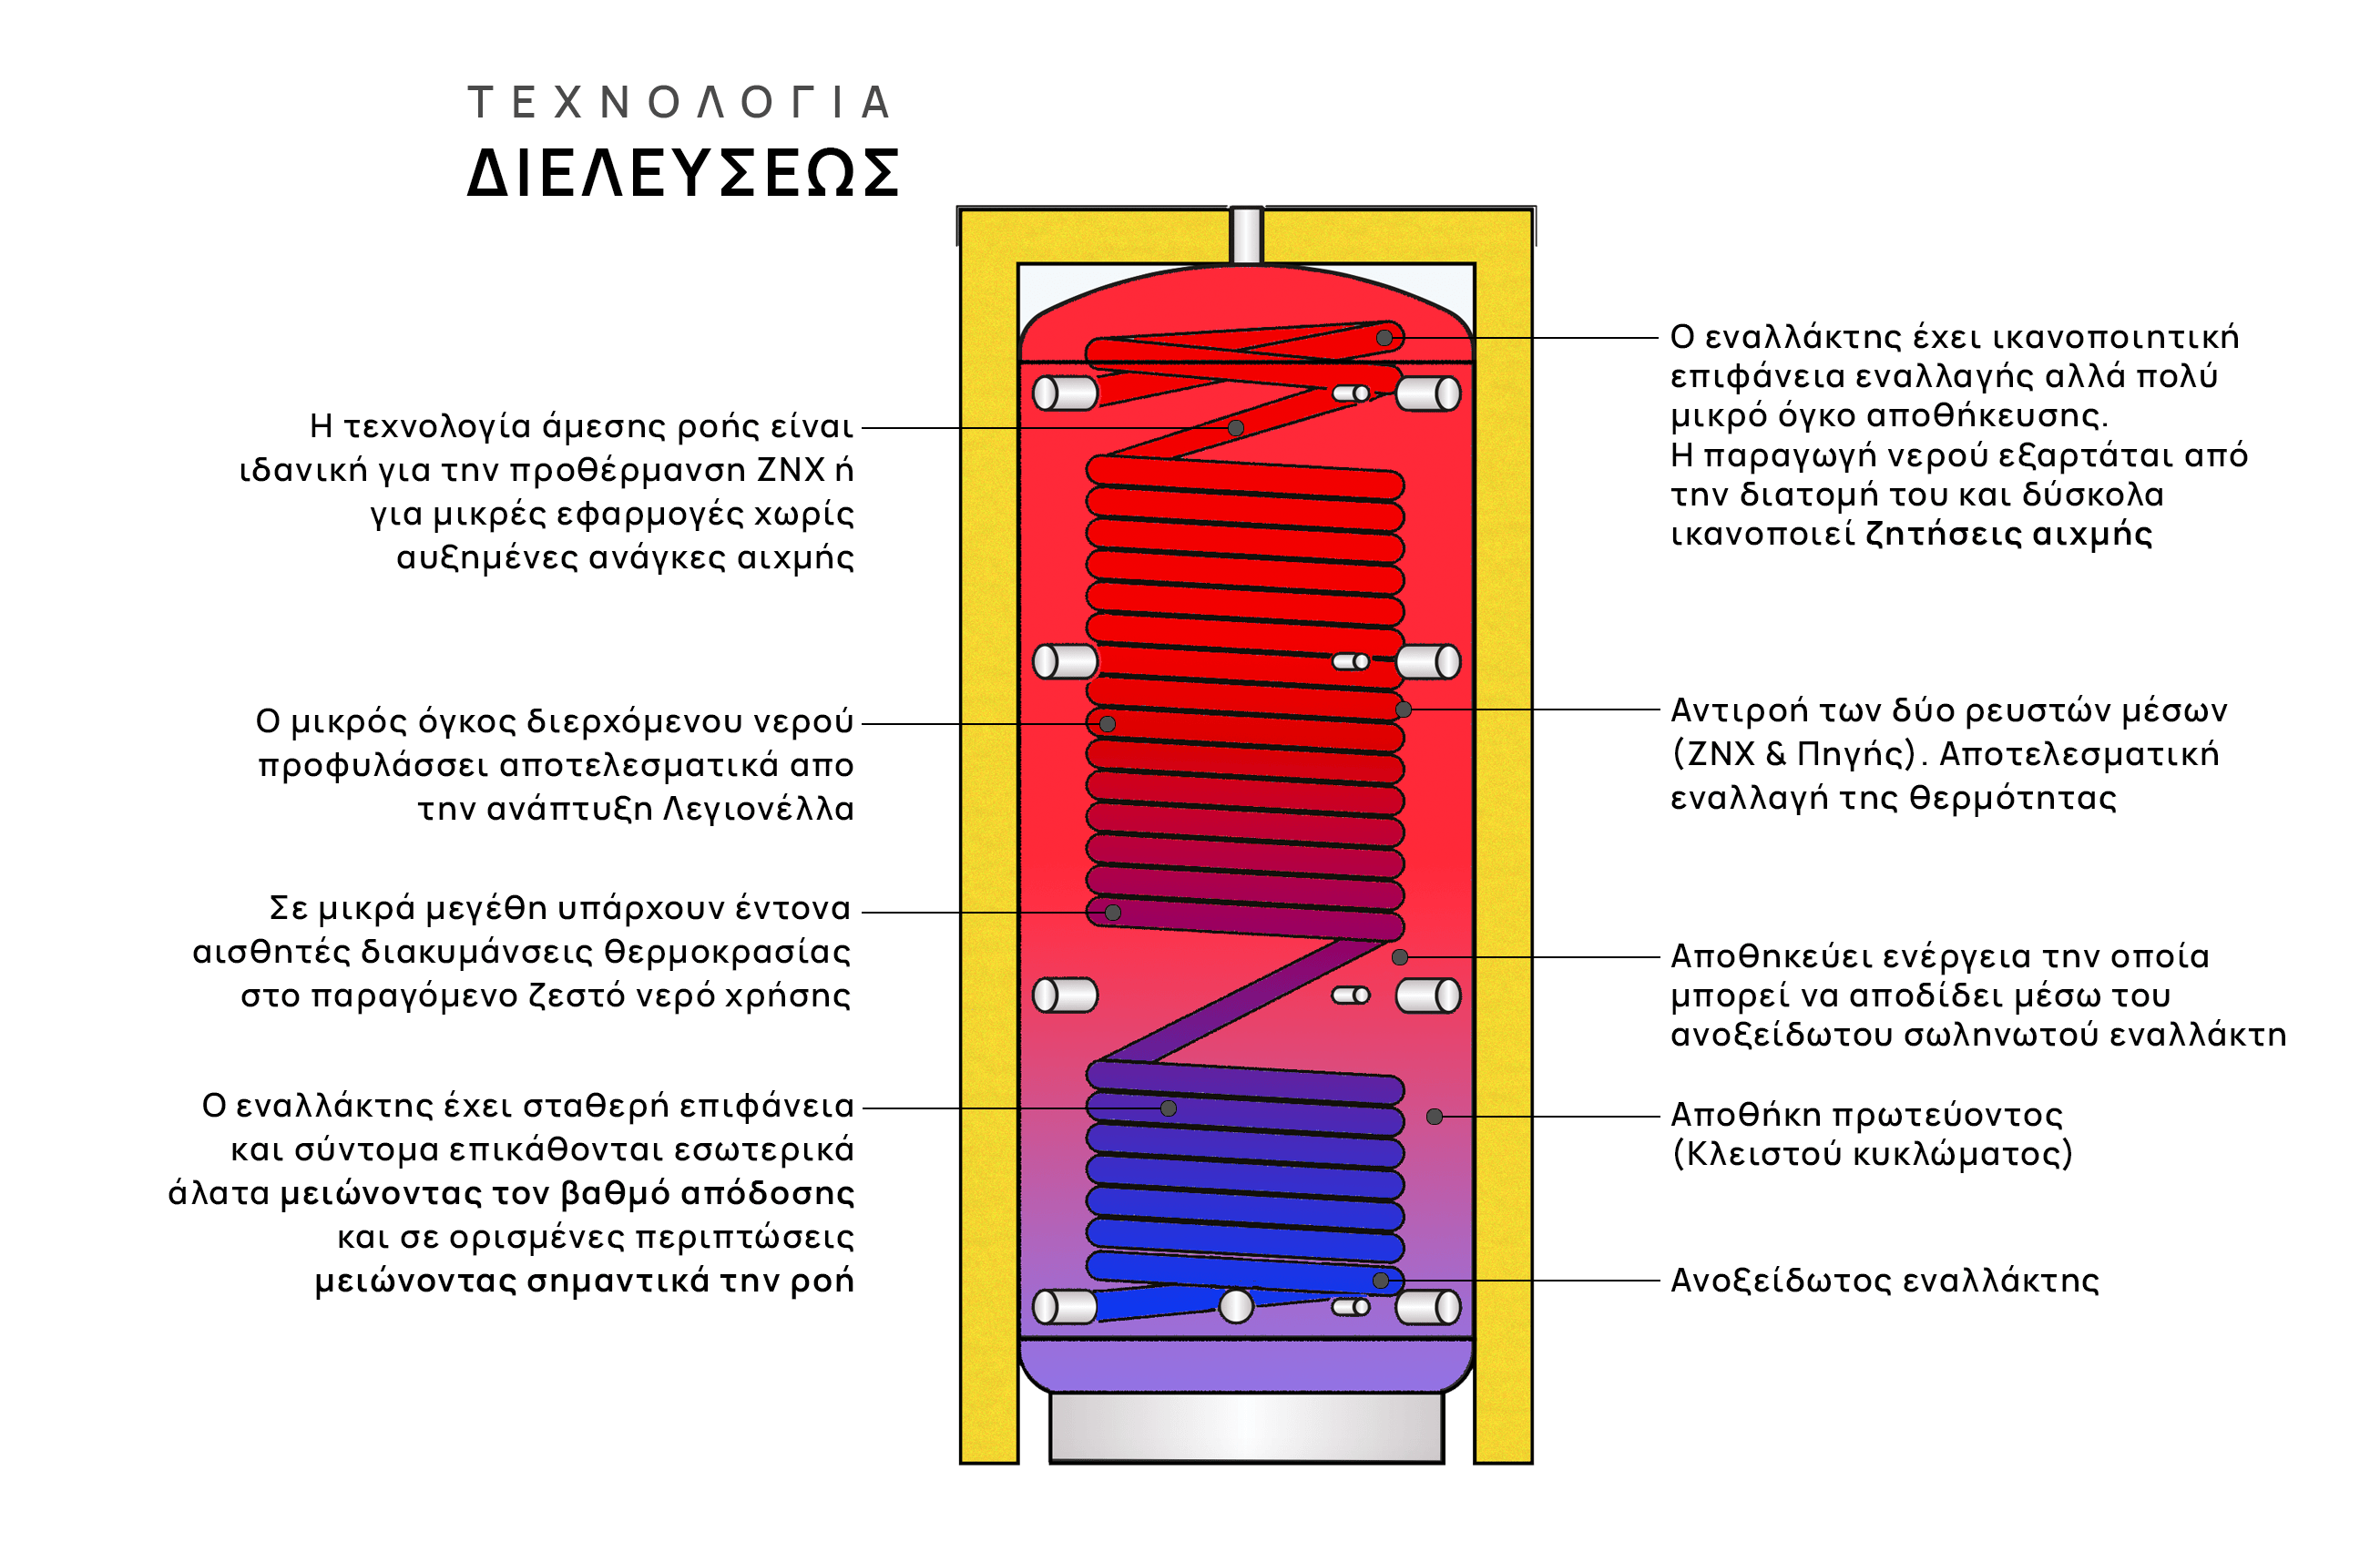 Direct Flow Anatomy 1